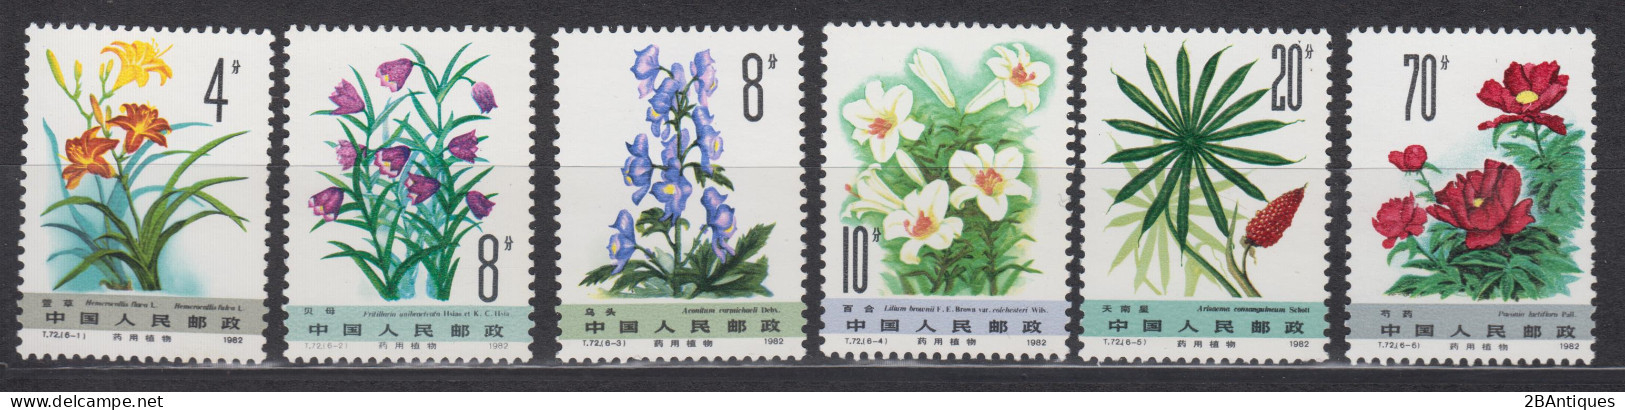 PR CHINA 1982 - Medicinal Plants MNH** OG XF - Neufs